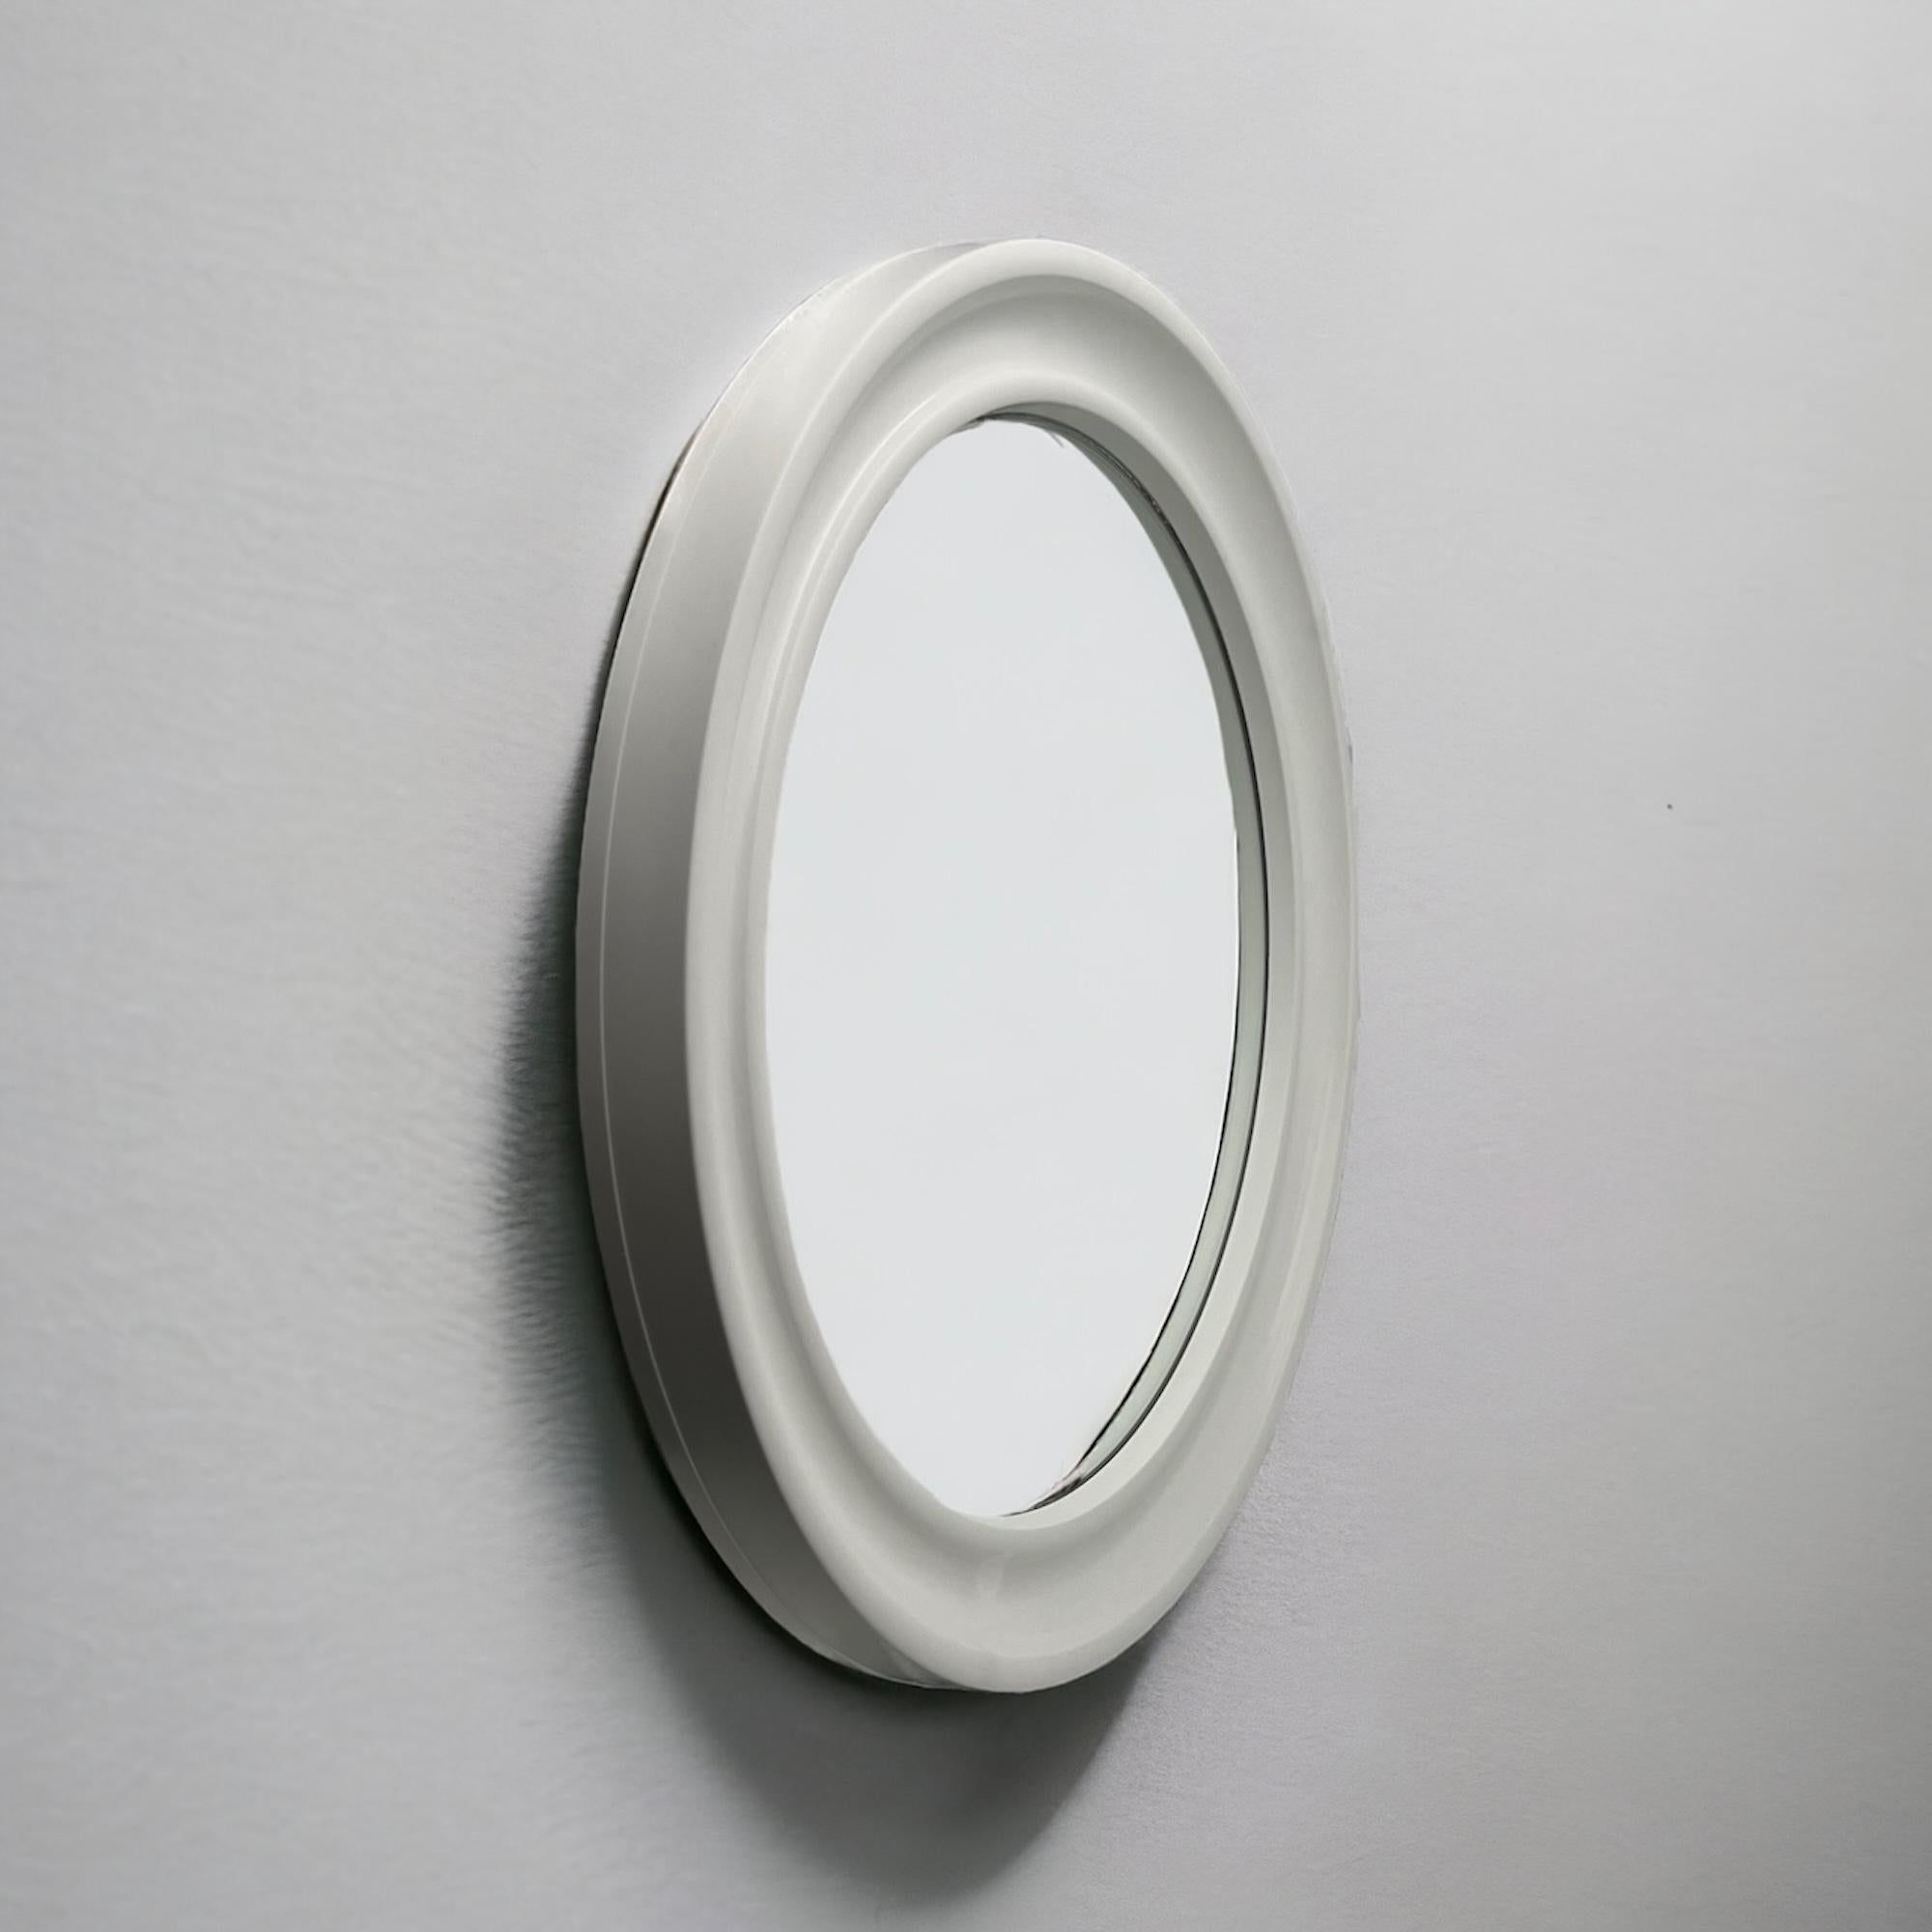 Late 20th Century Carrara & Matta 'America' Wall Mirror in off-white - 70s Patent Bakelite Design